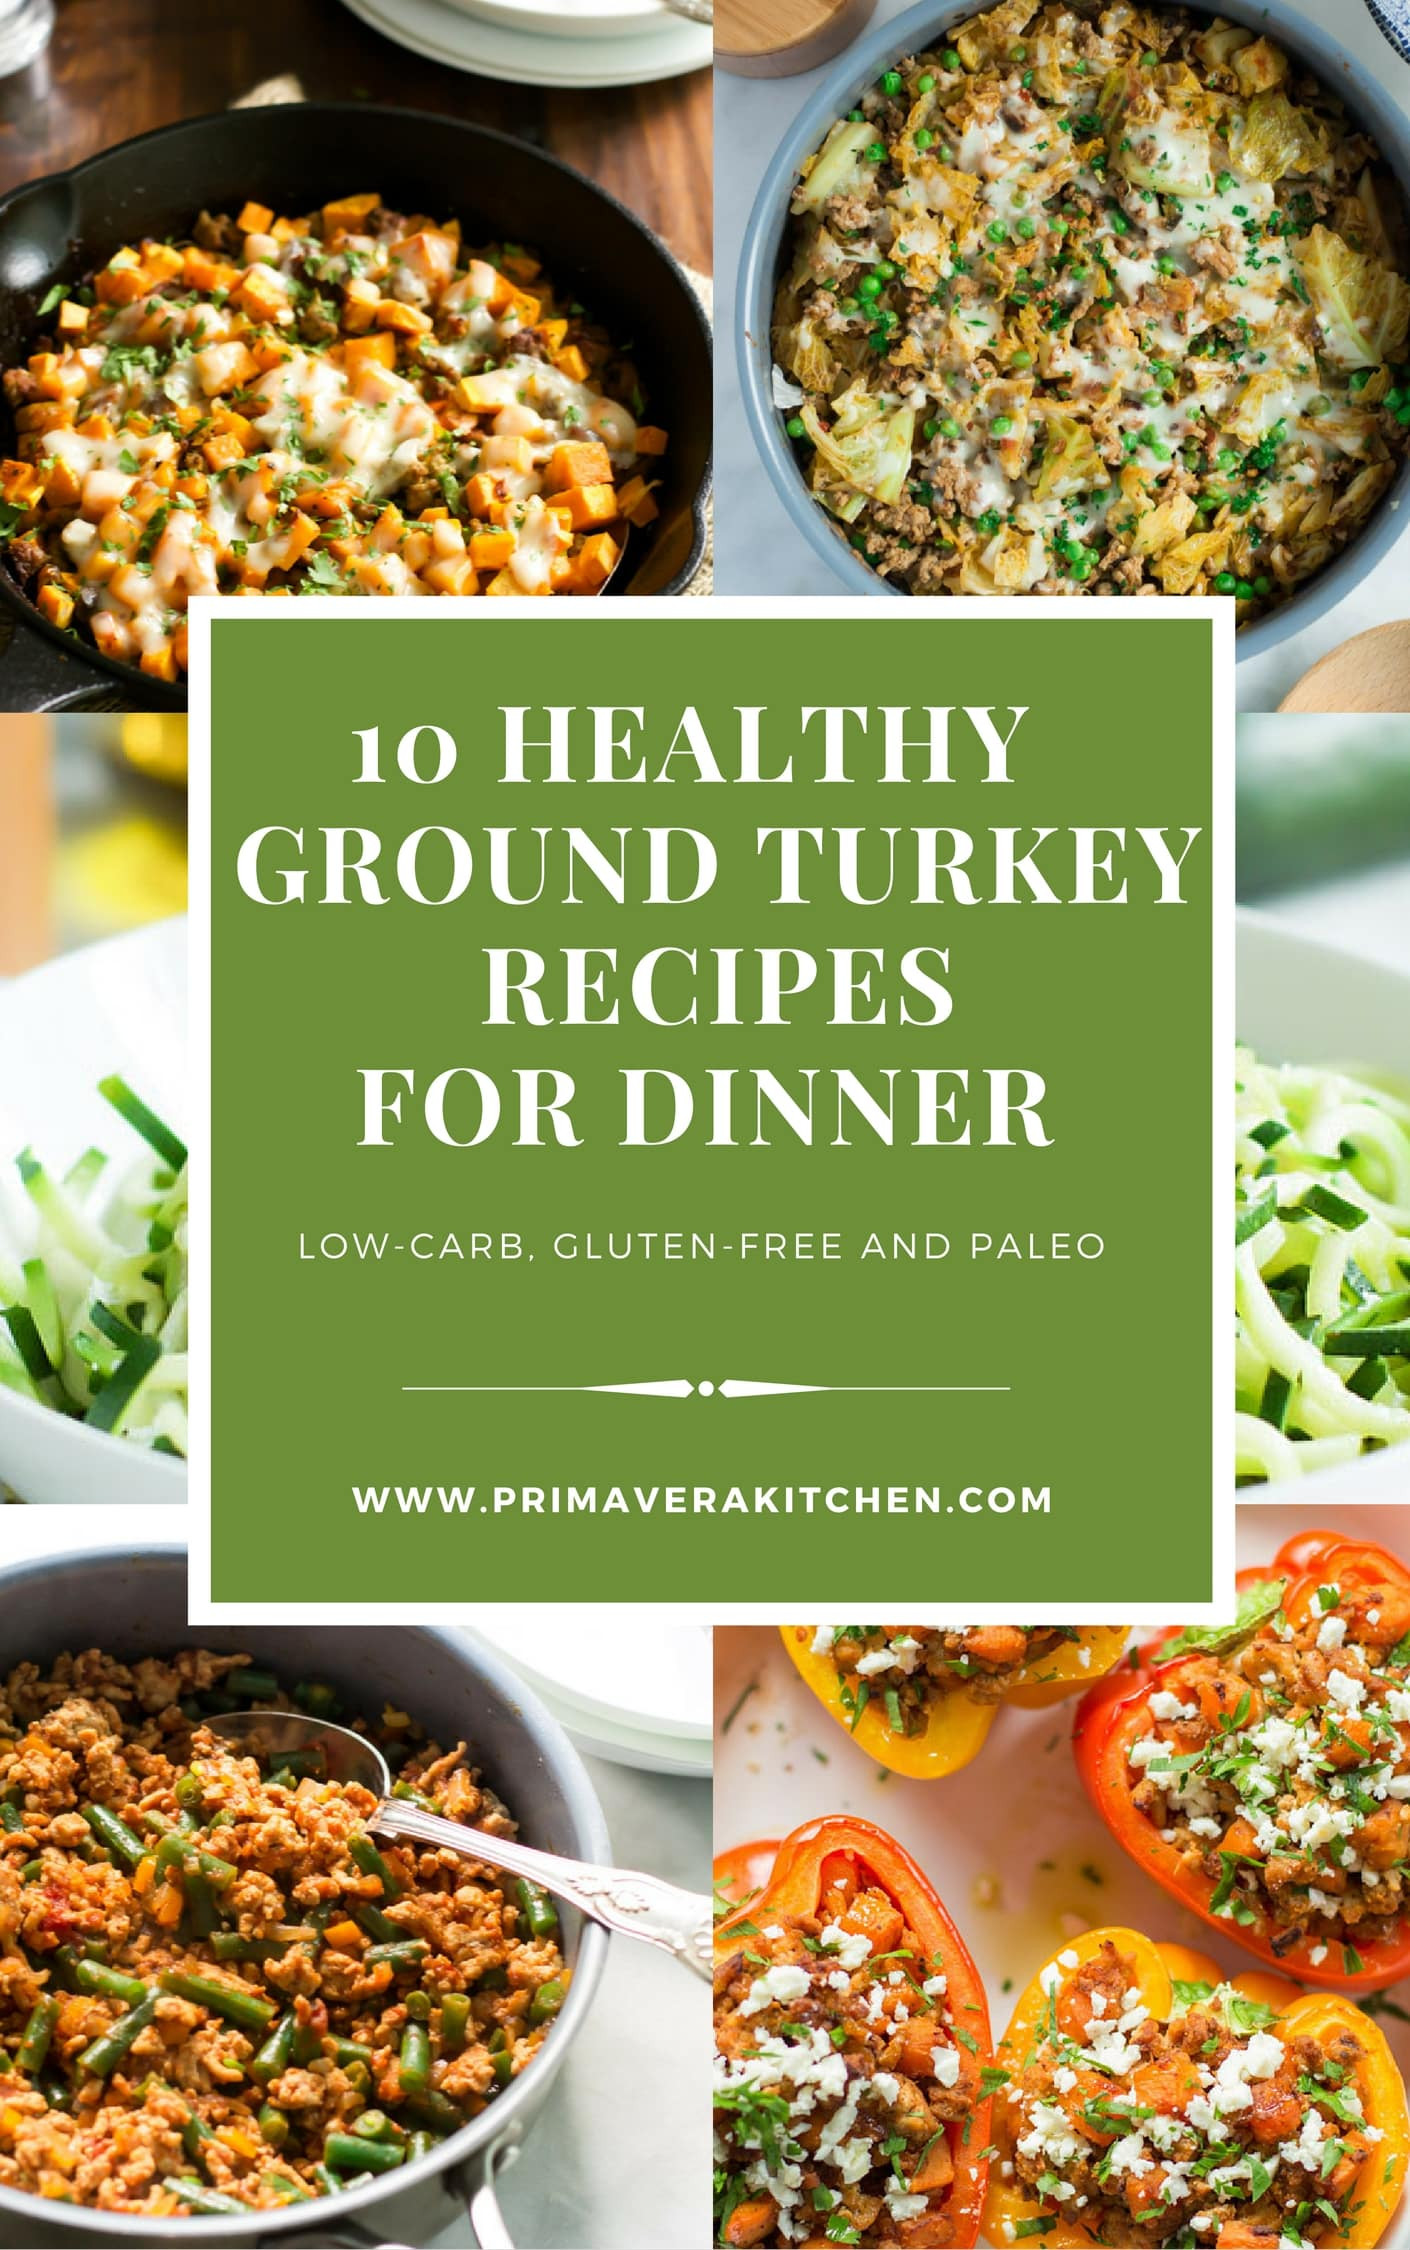 Healthy Dinner With Ground Turkey
 10 Healthy Ground Turkey Recipes for Dinner Primavera